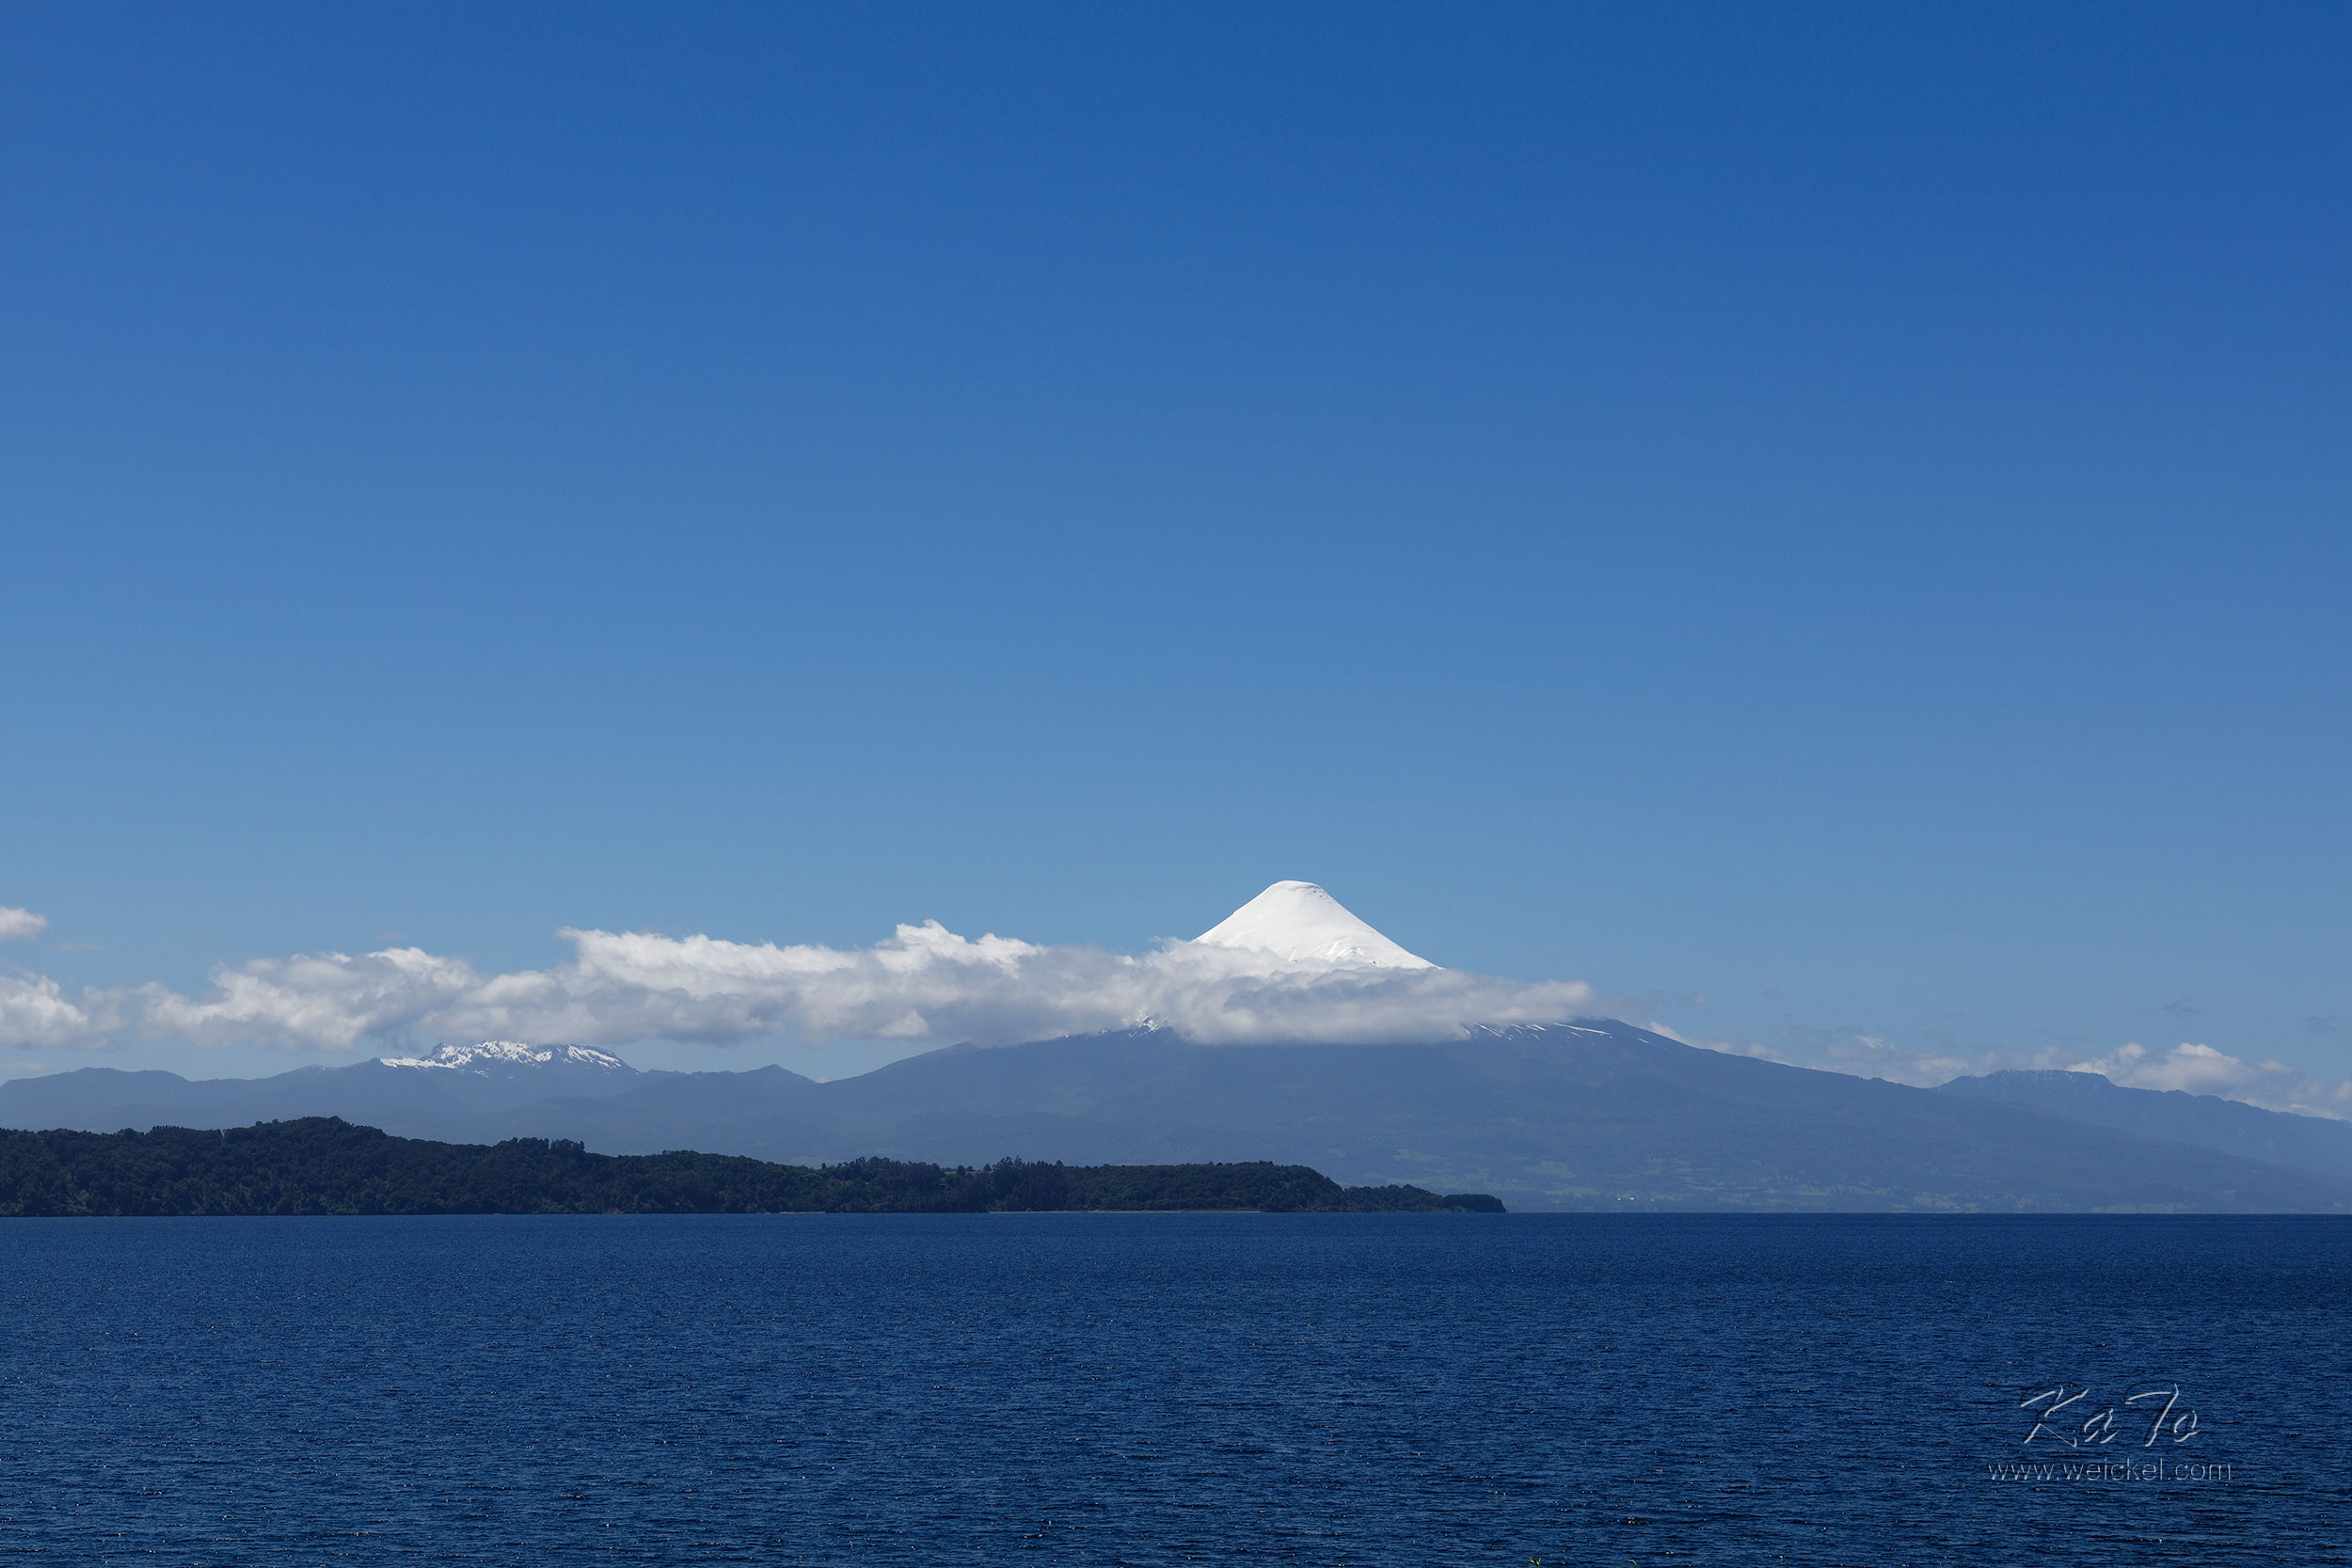 Lago Llanquihue with Volcano Osorno